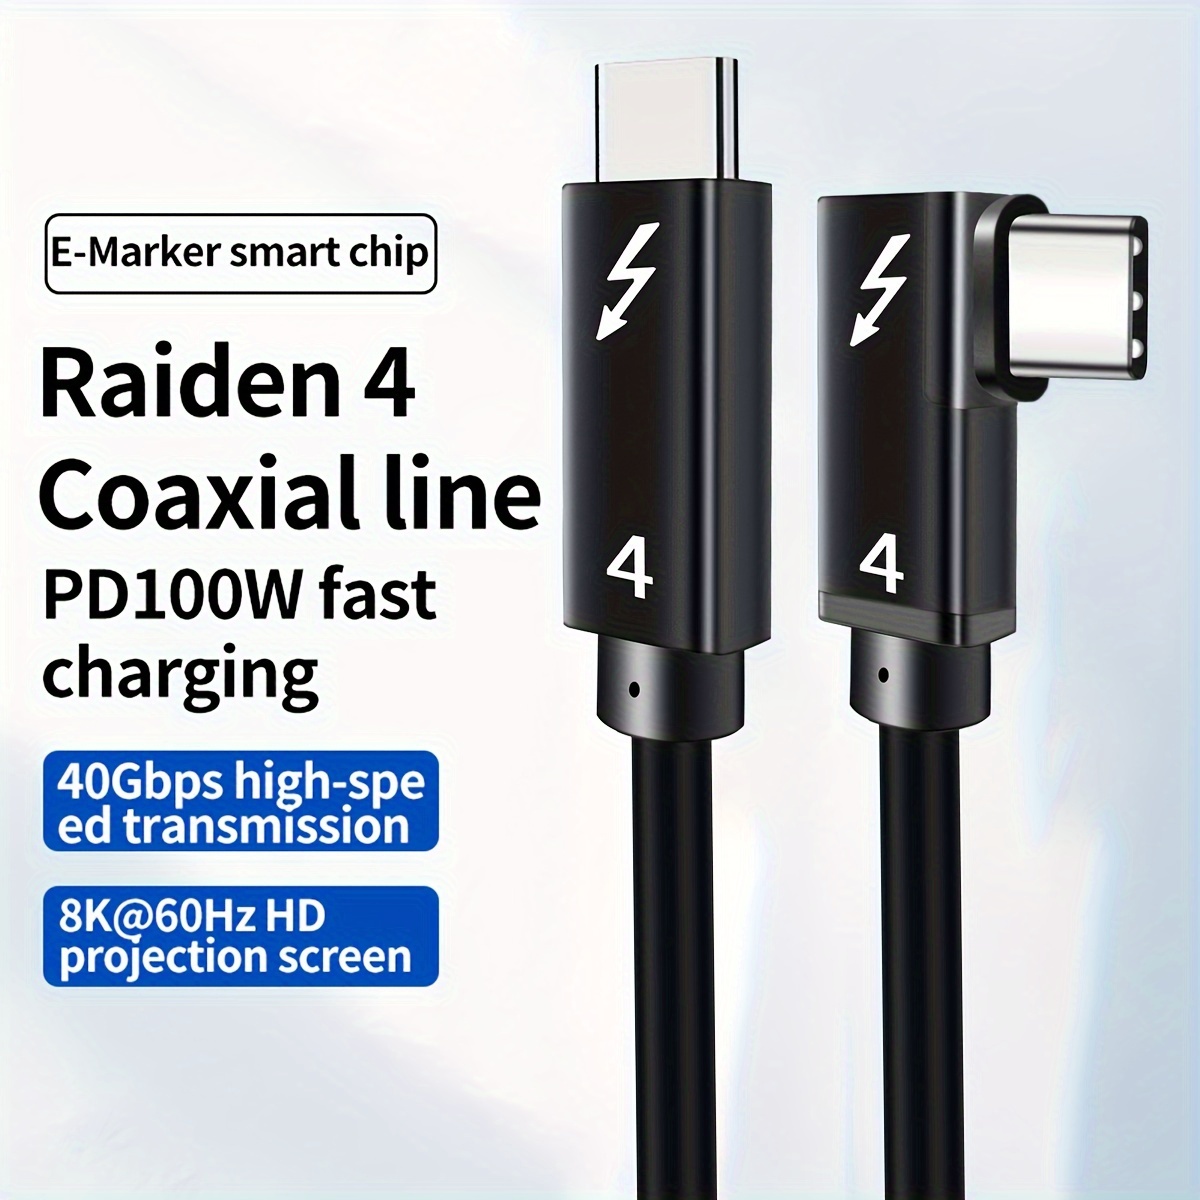 Câble Type C USB 3.2 mâle / mâle tressé Gen 2 10Gb 60W 3A - 2m